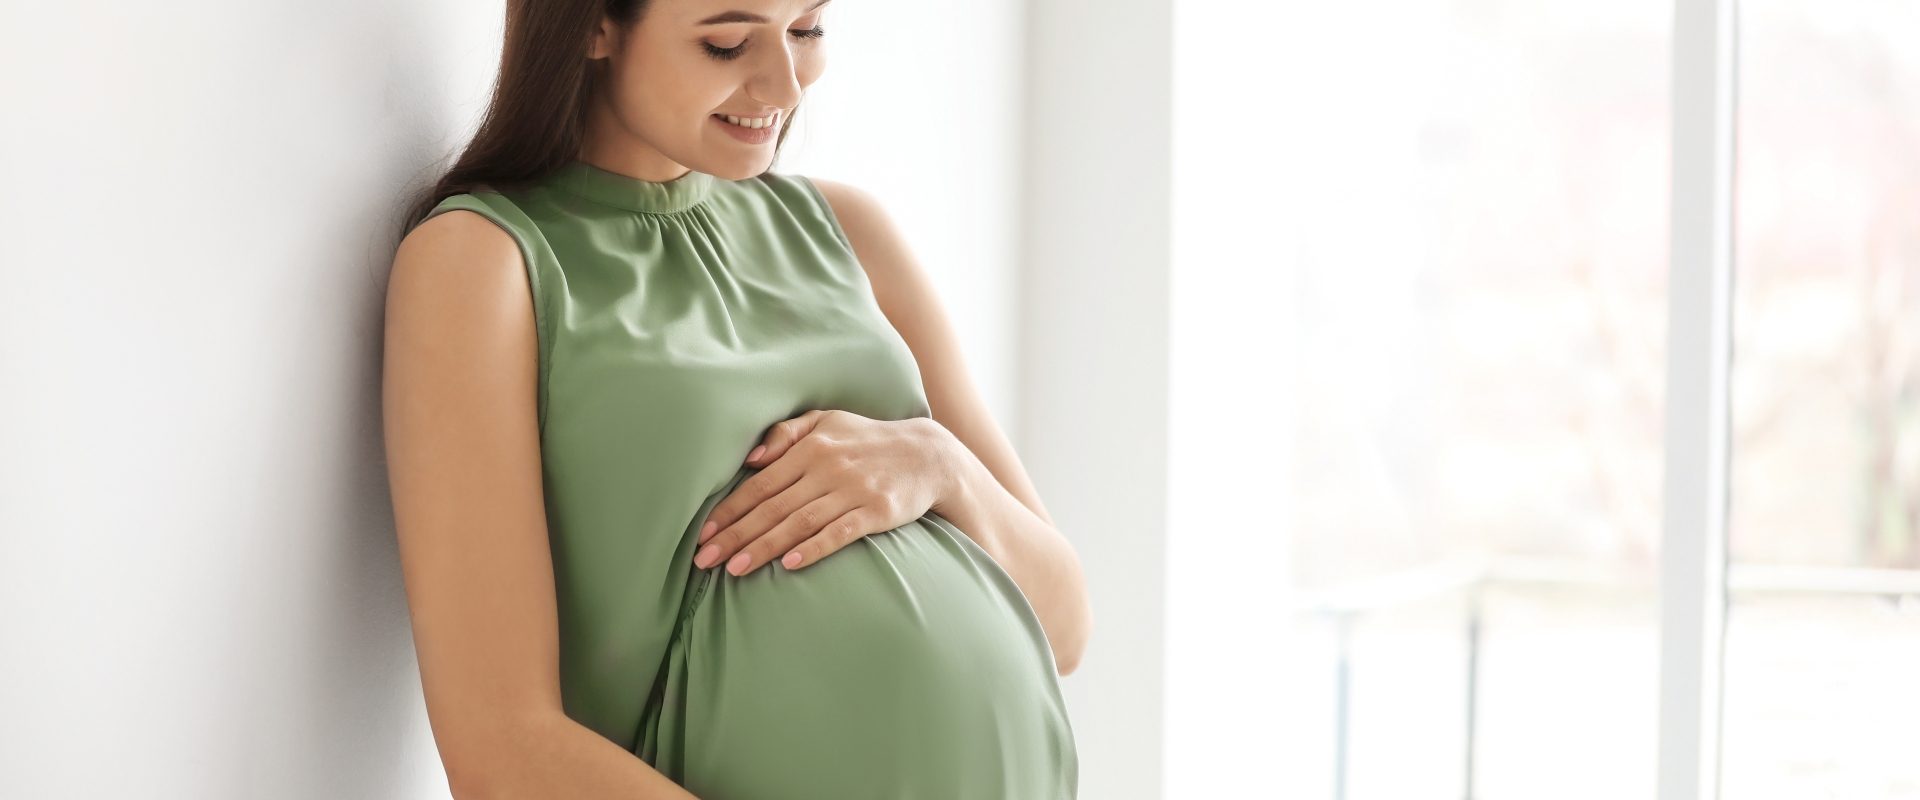 Ciśnienie w ciąży - jakie jest prawidłowe? Czym grozi nadciśnienie, a czym niedociśnienie? Kobieta w zaawansowanej ciąży w zielonej sukience dotyka swojego brzucha.